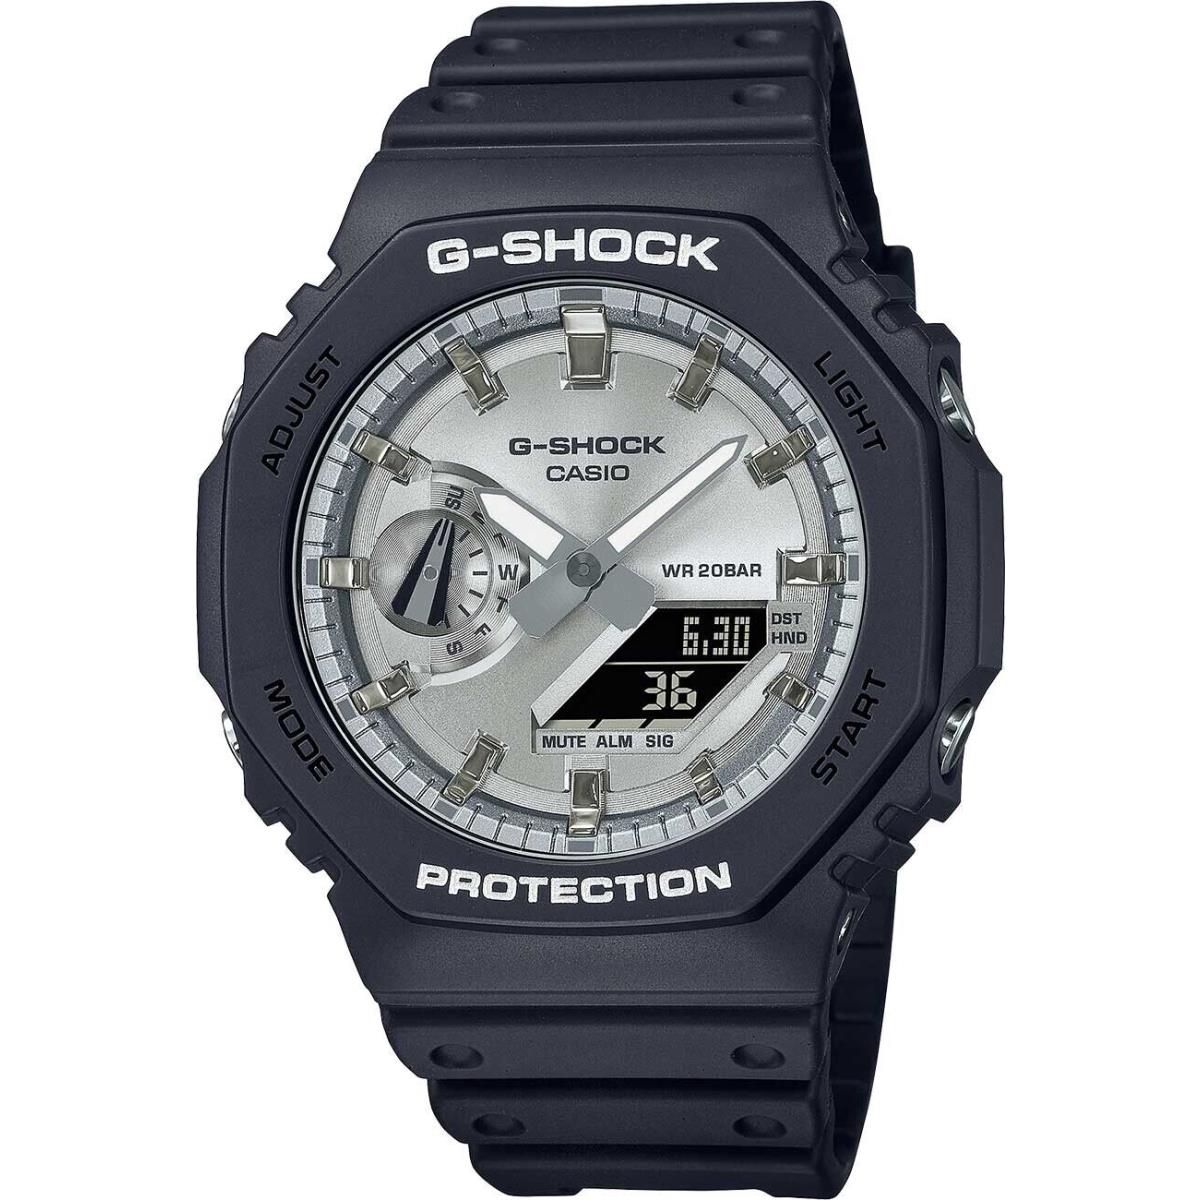 Casio G-shock GA-2100SB-1A Carbon/resin Black Digital Quartz Watch